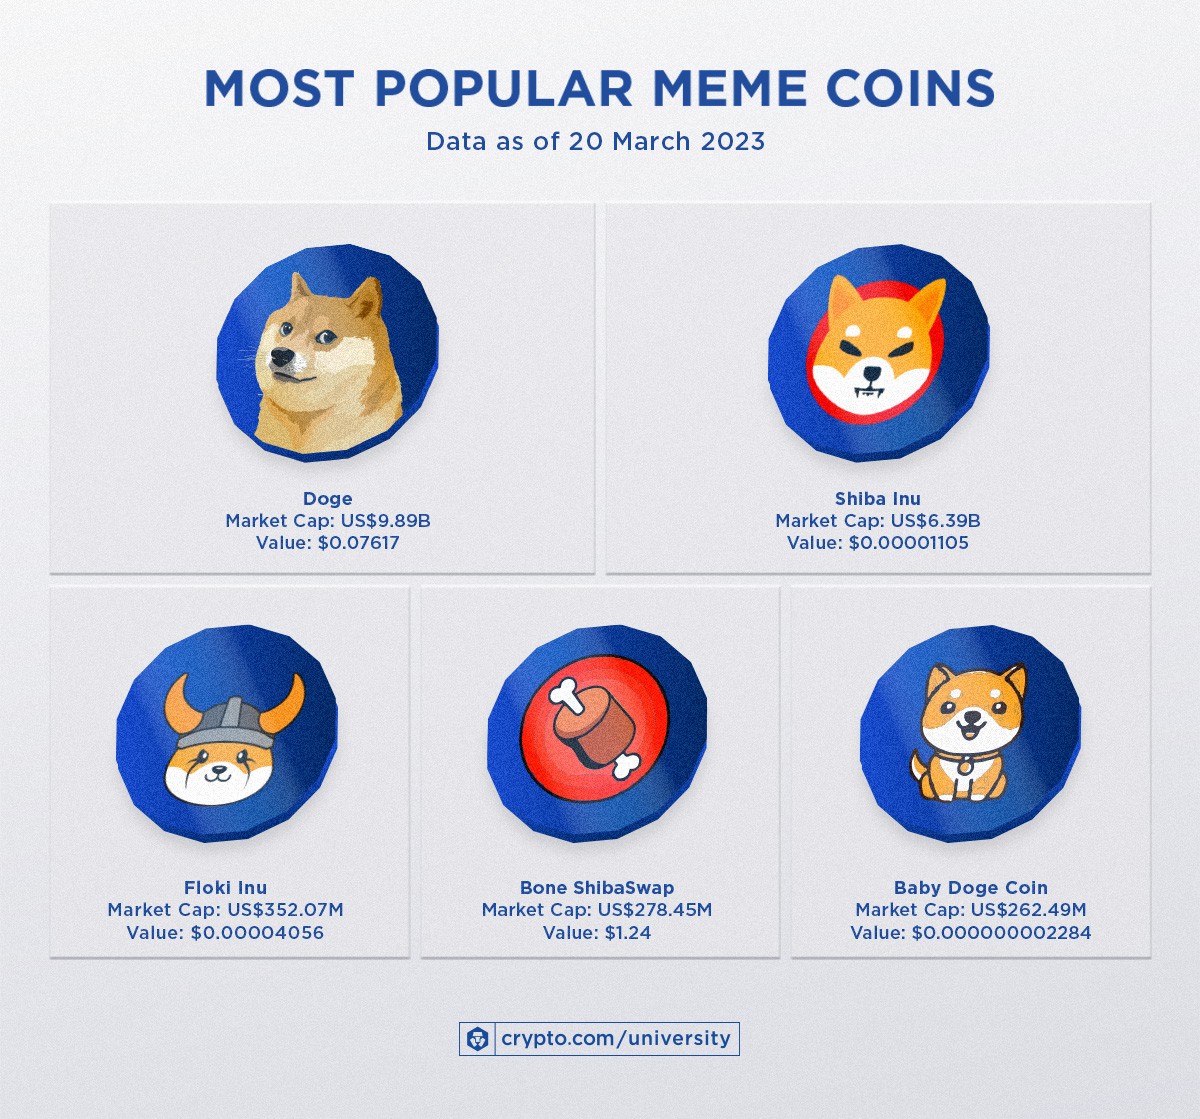 meme coin on crypto.com